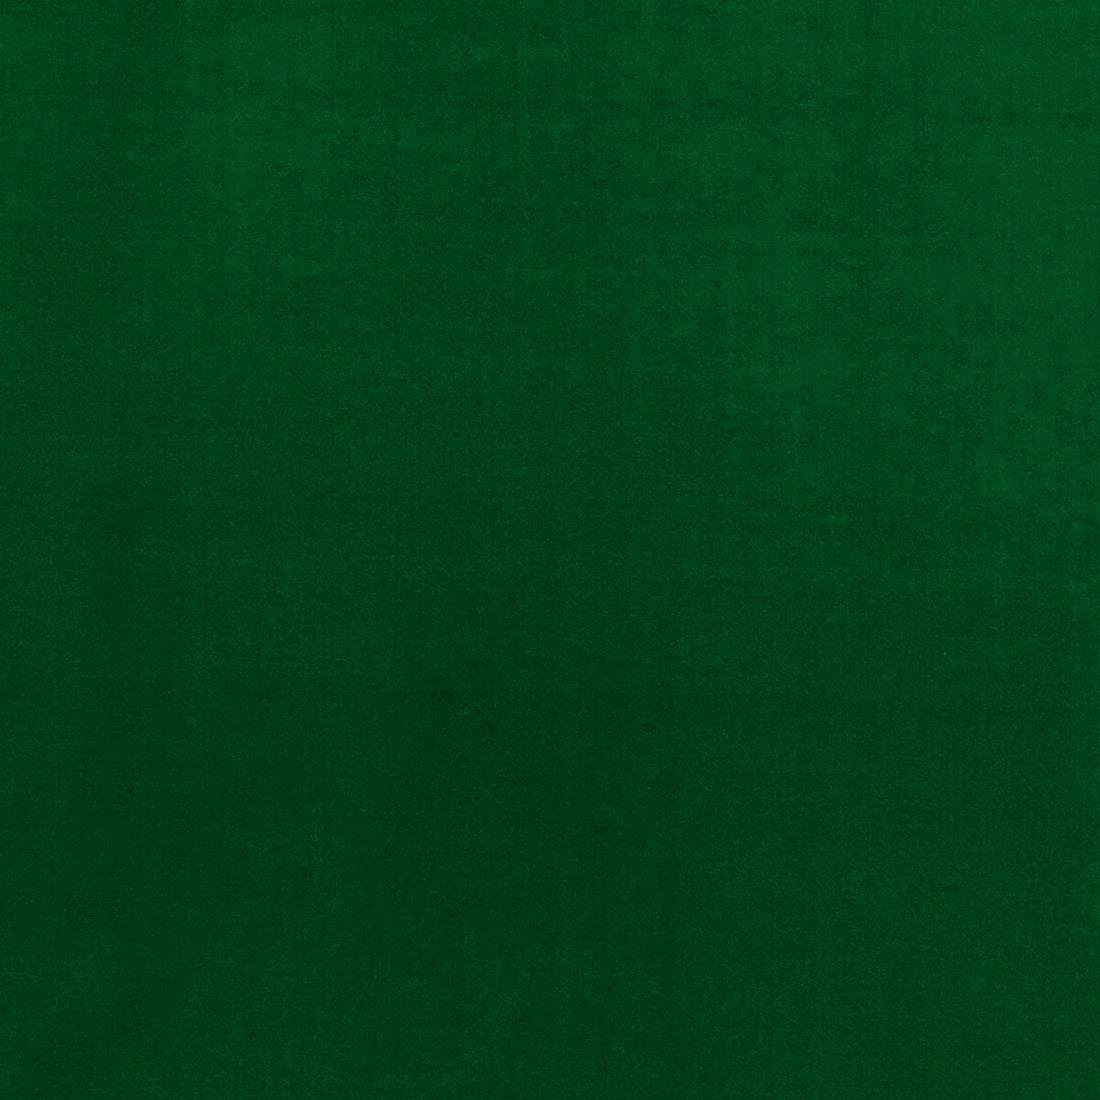 Baker House Velvet fabric in emerald color - pattern BF10838.785.0 - by G P &amp; J Baker in the Baker House Velvet collection